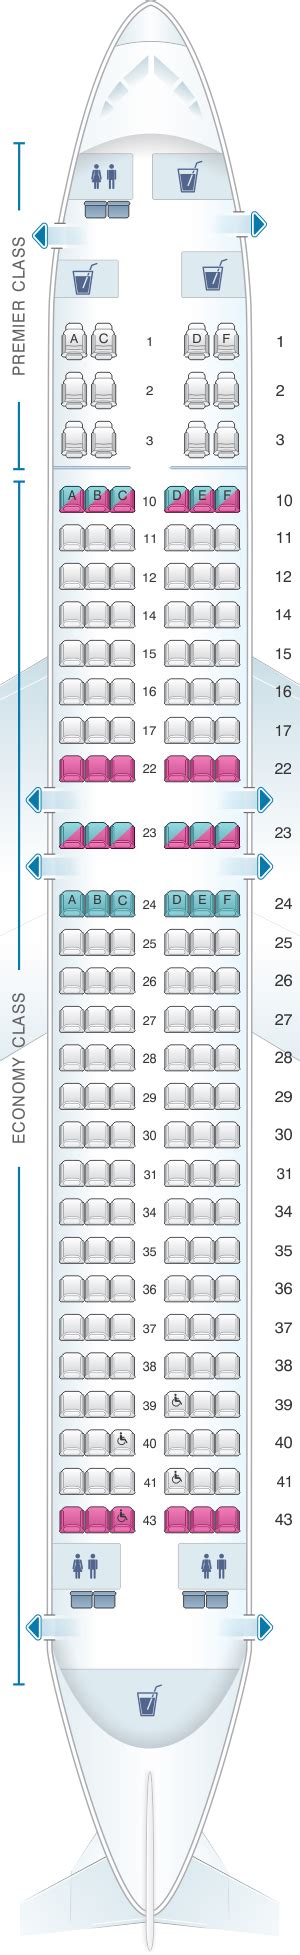 Boeing 737 800 Seat Plan